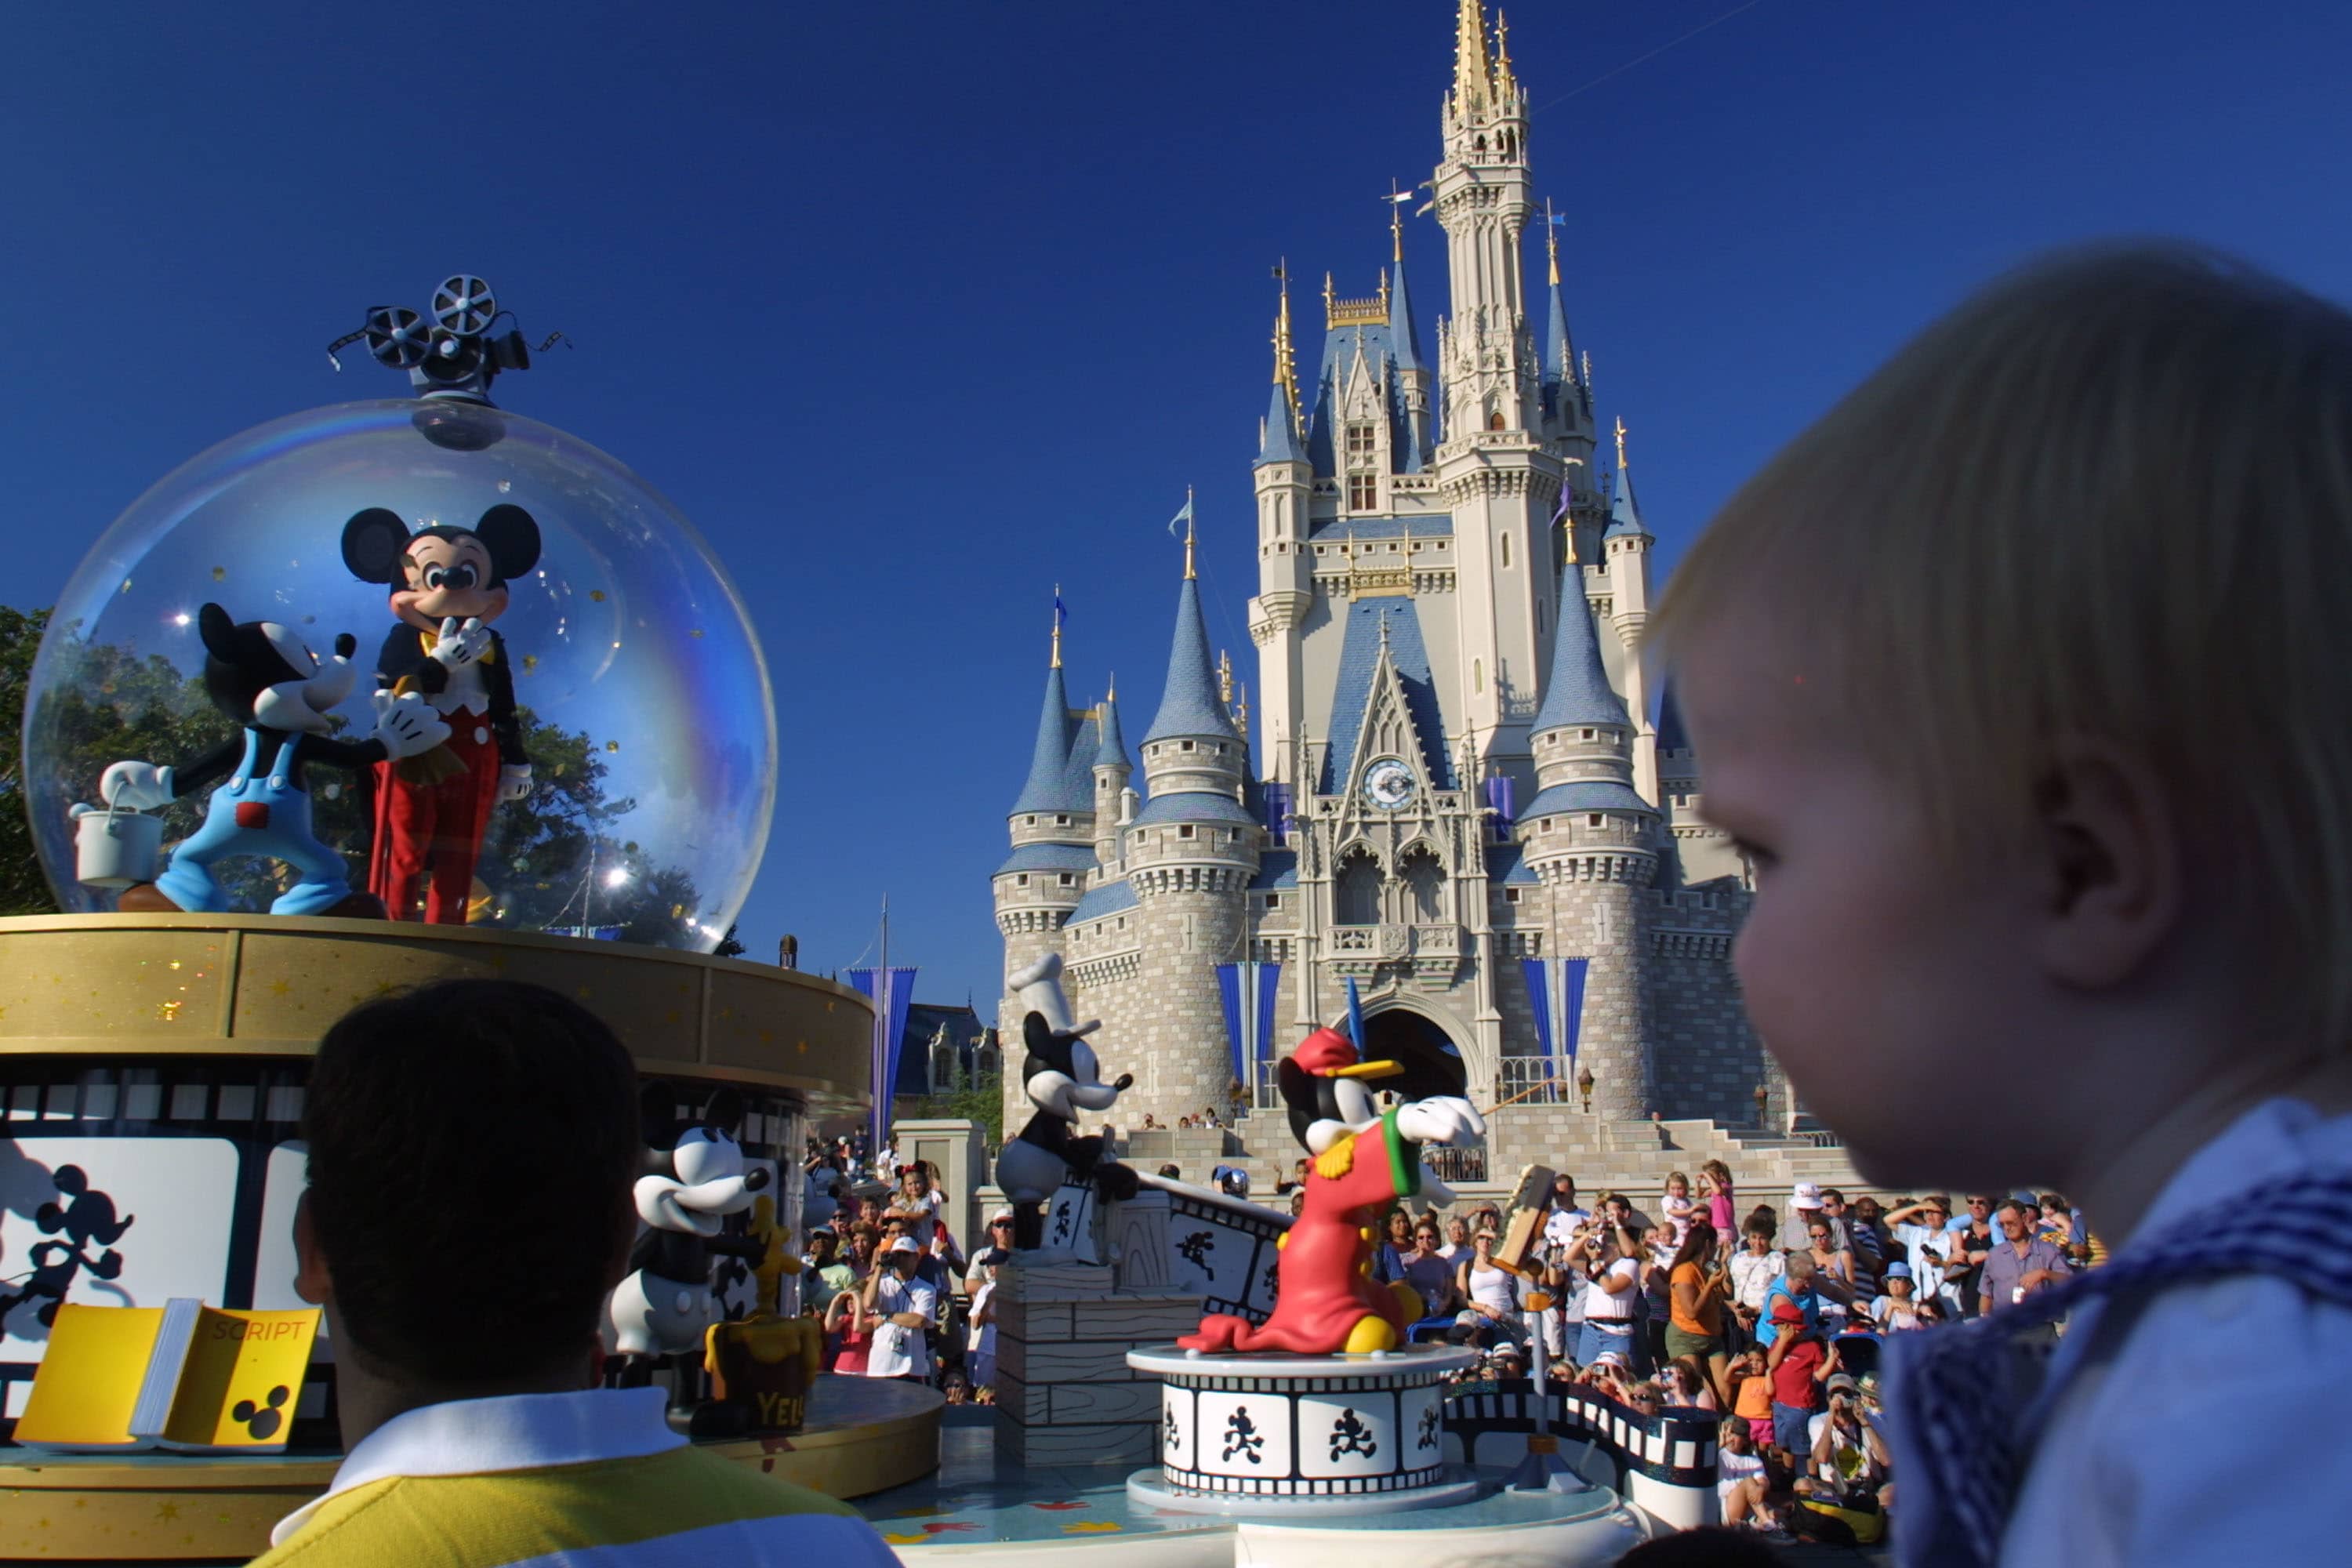 Wells Fargo makes a swift endorsement deal with beleaguered Disney.  We await Iger's turnaround plan